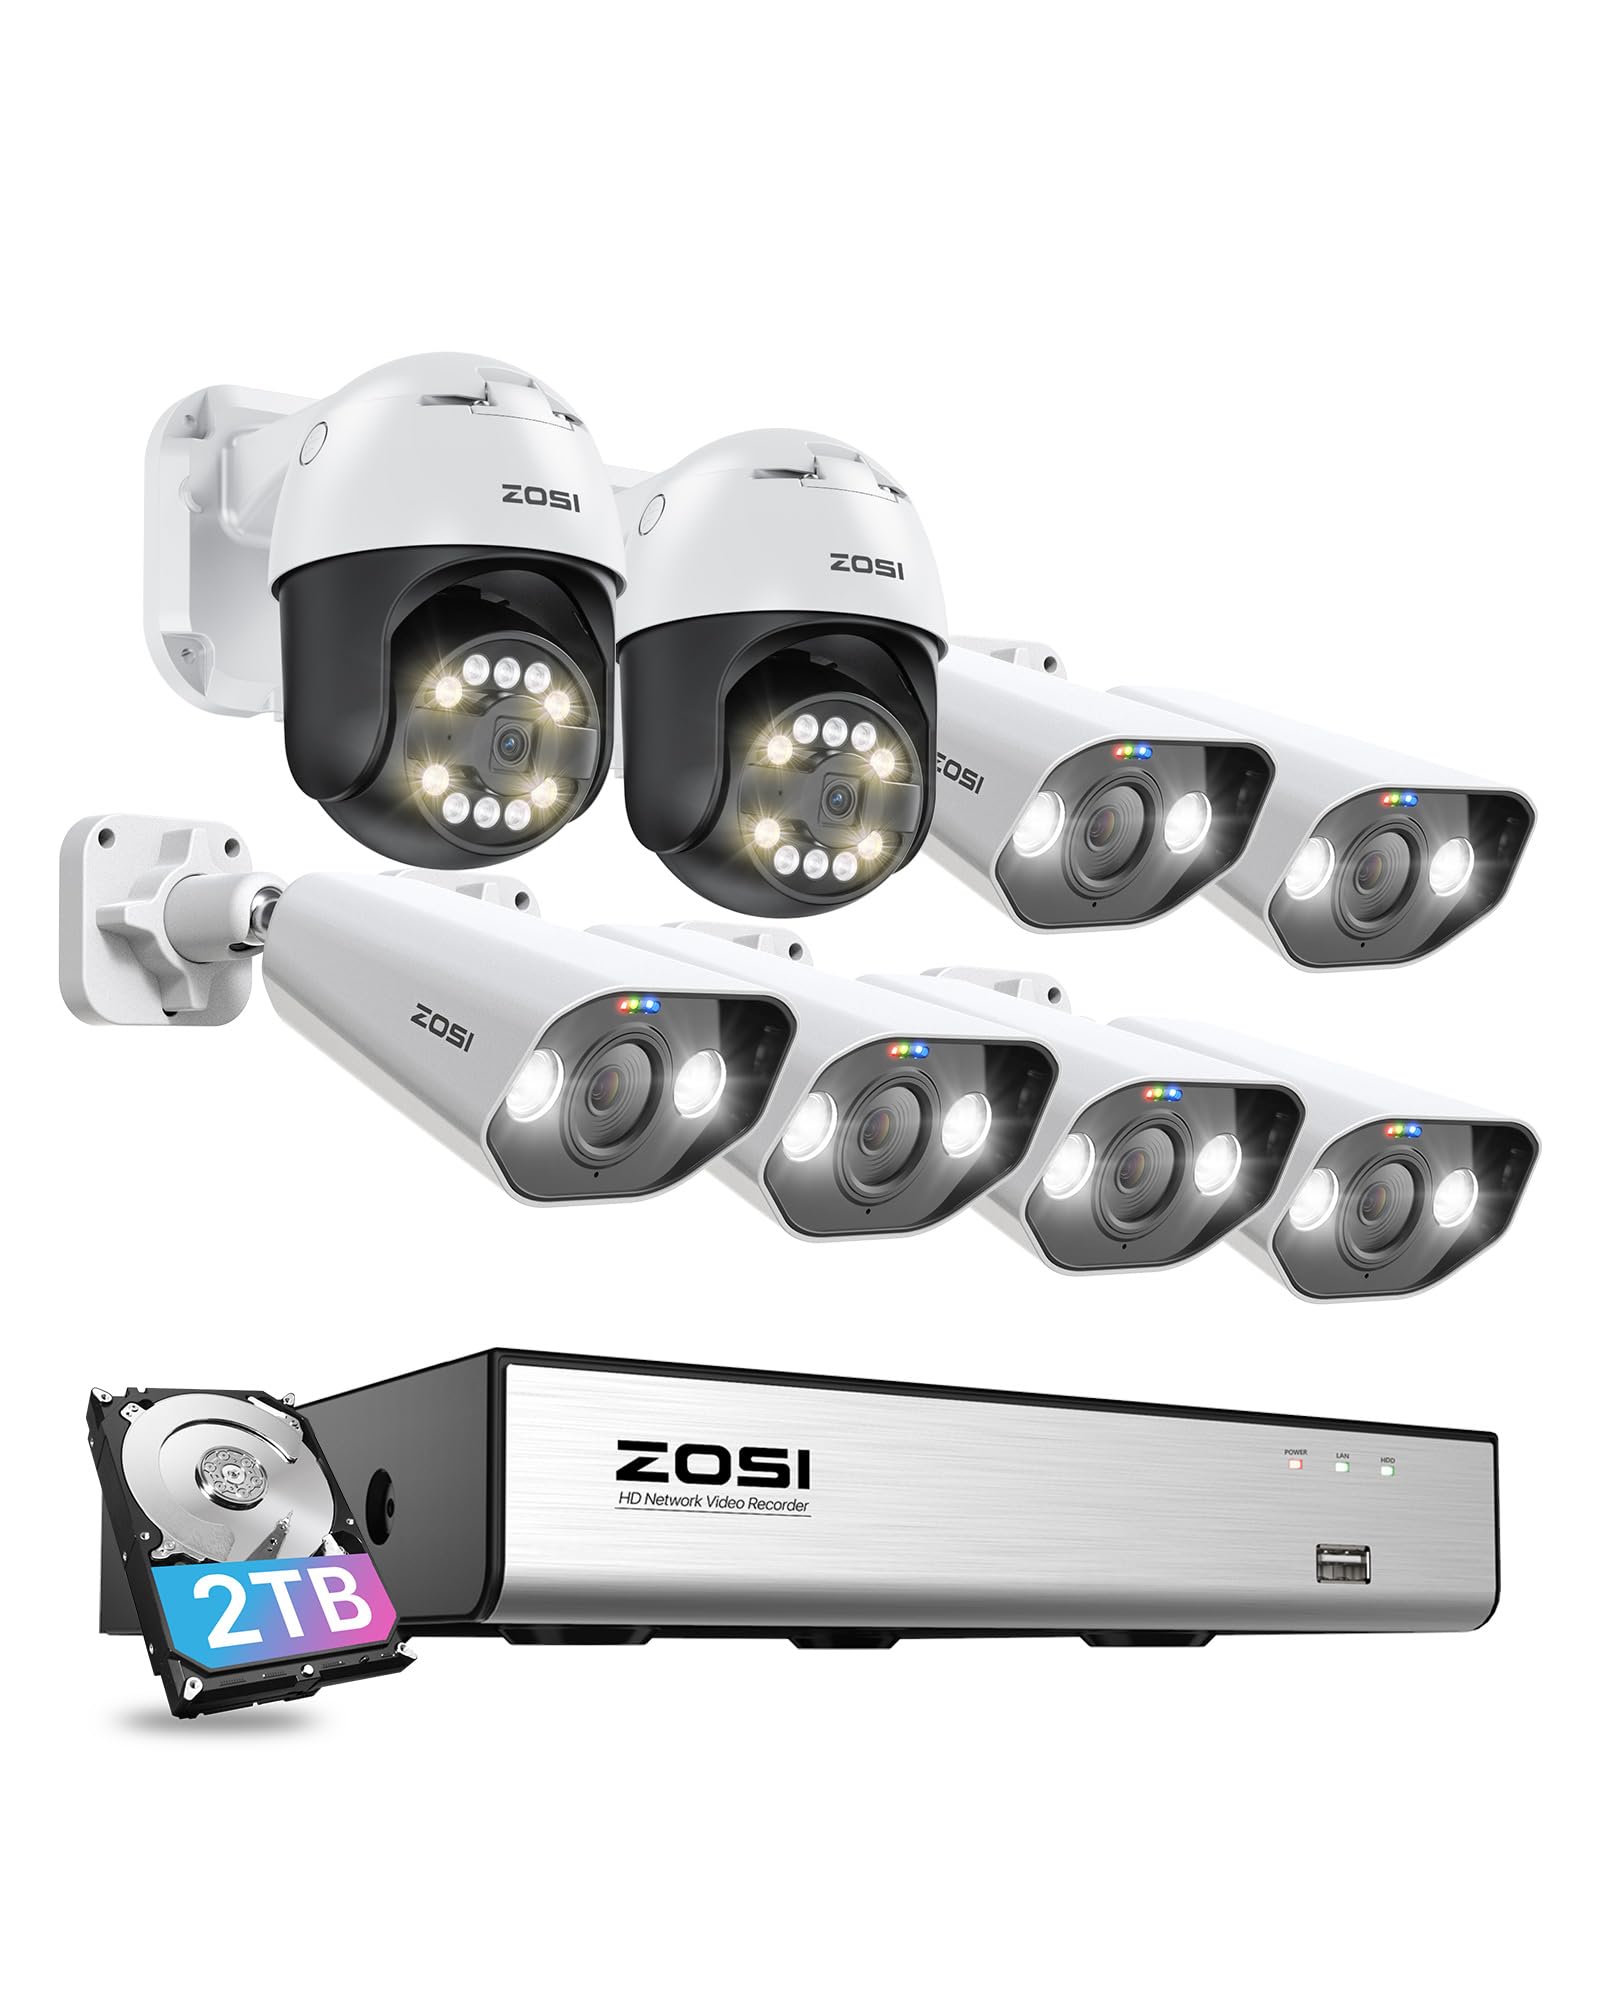 ZOSI 5MP PoE Überwachungskamera Set Aussen, 6X 5MP Bullet und 2X Schwenkbar Dome IP Kameras, 8CH 4K 2TB HDD NVR, Auto-Tracking, Personen-/Fahrzeugerkennung, 2-Wege-Audio